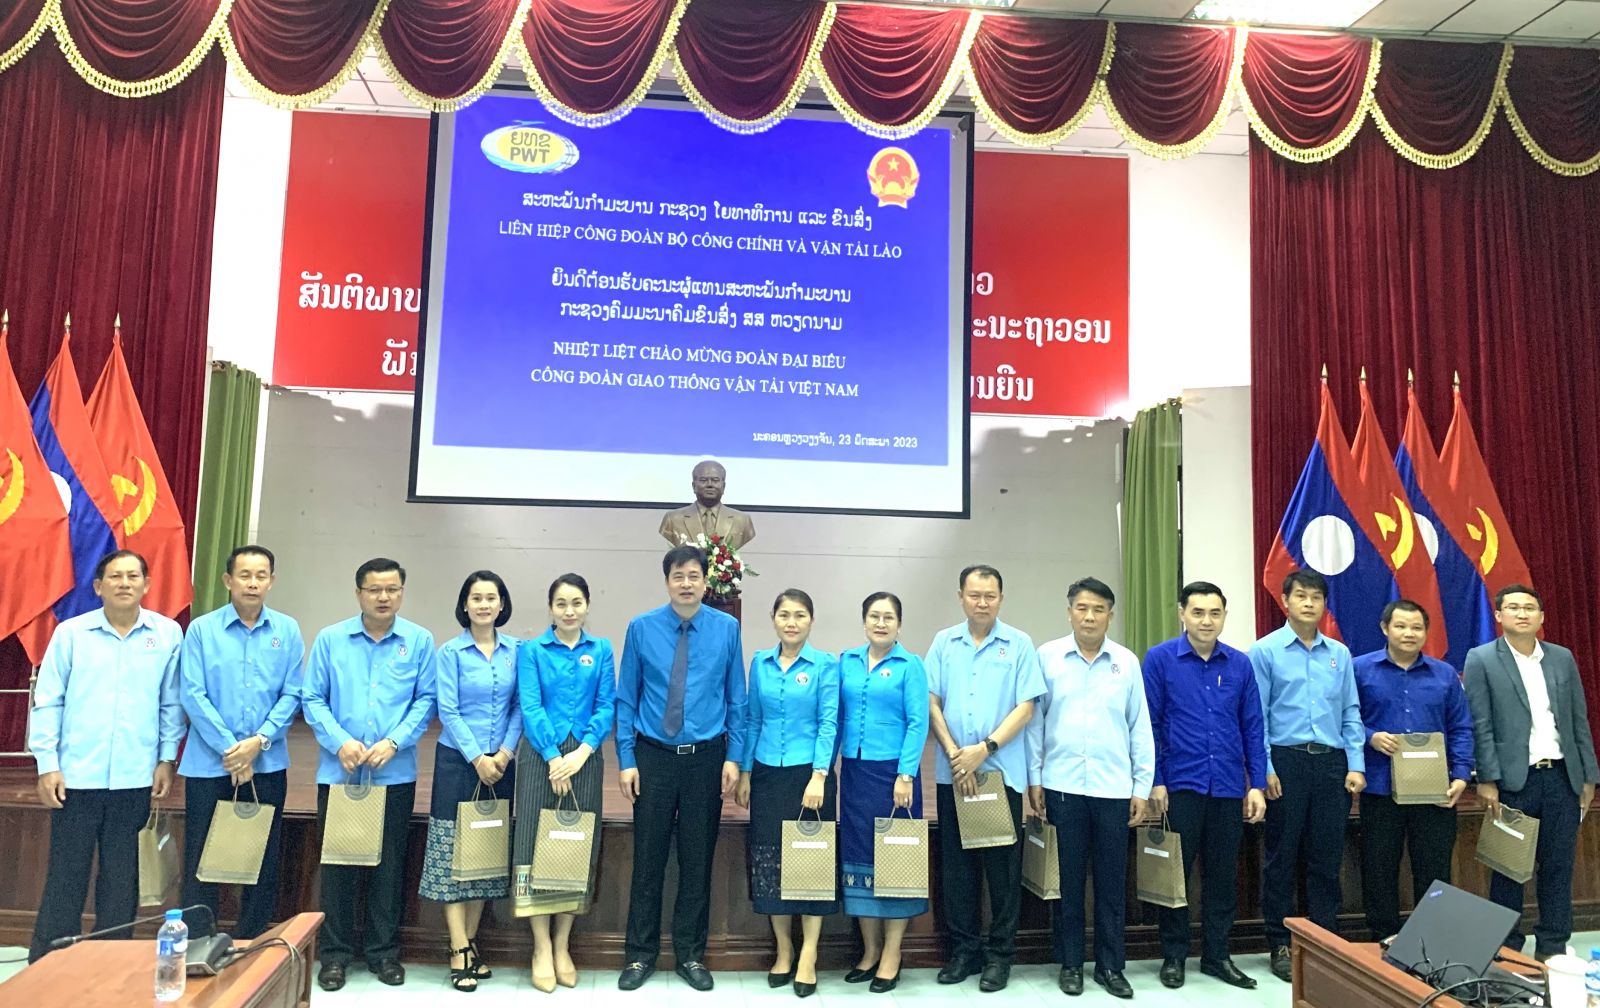 Công đoàn GTVT Việt Nam tăng cường hợp tác với Liên hiệp Công đoàn Bộ Công chính và vận tải Lào - Ảnh 3.